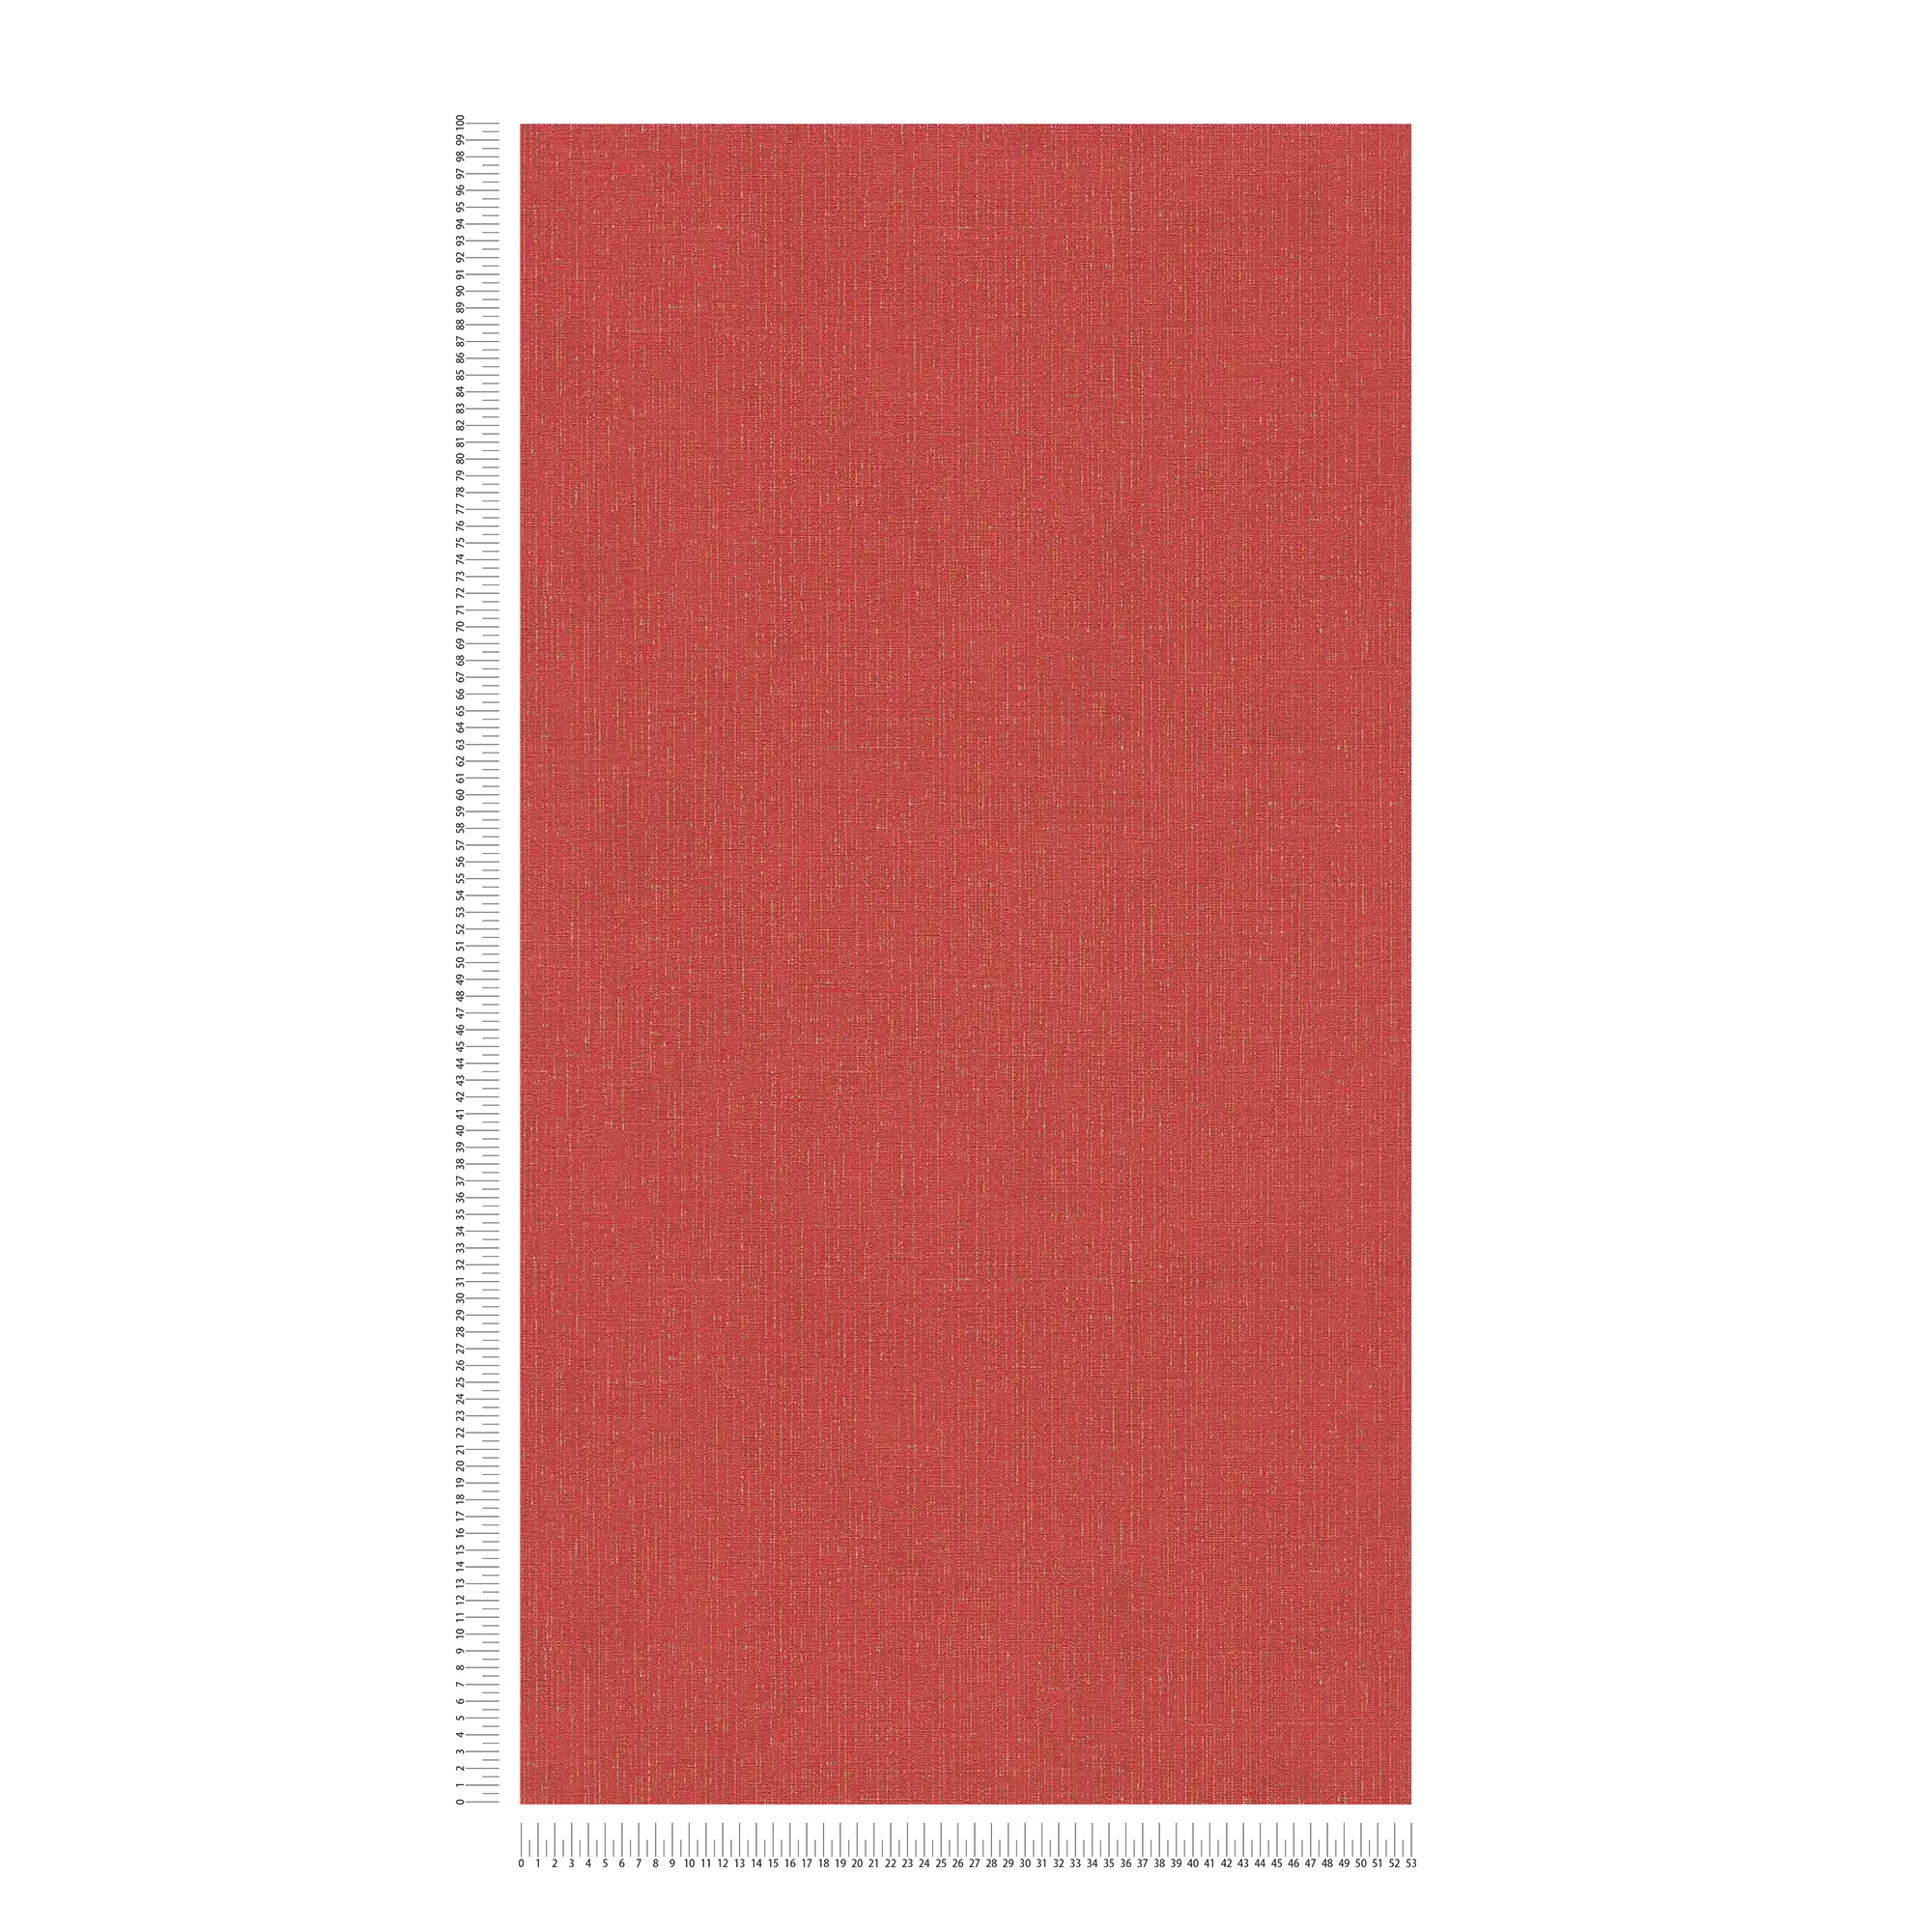             Papier peint rouge doré chiné avec aspect textile - métallique, rouge
        